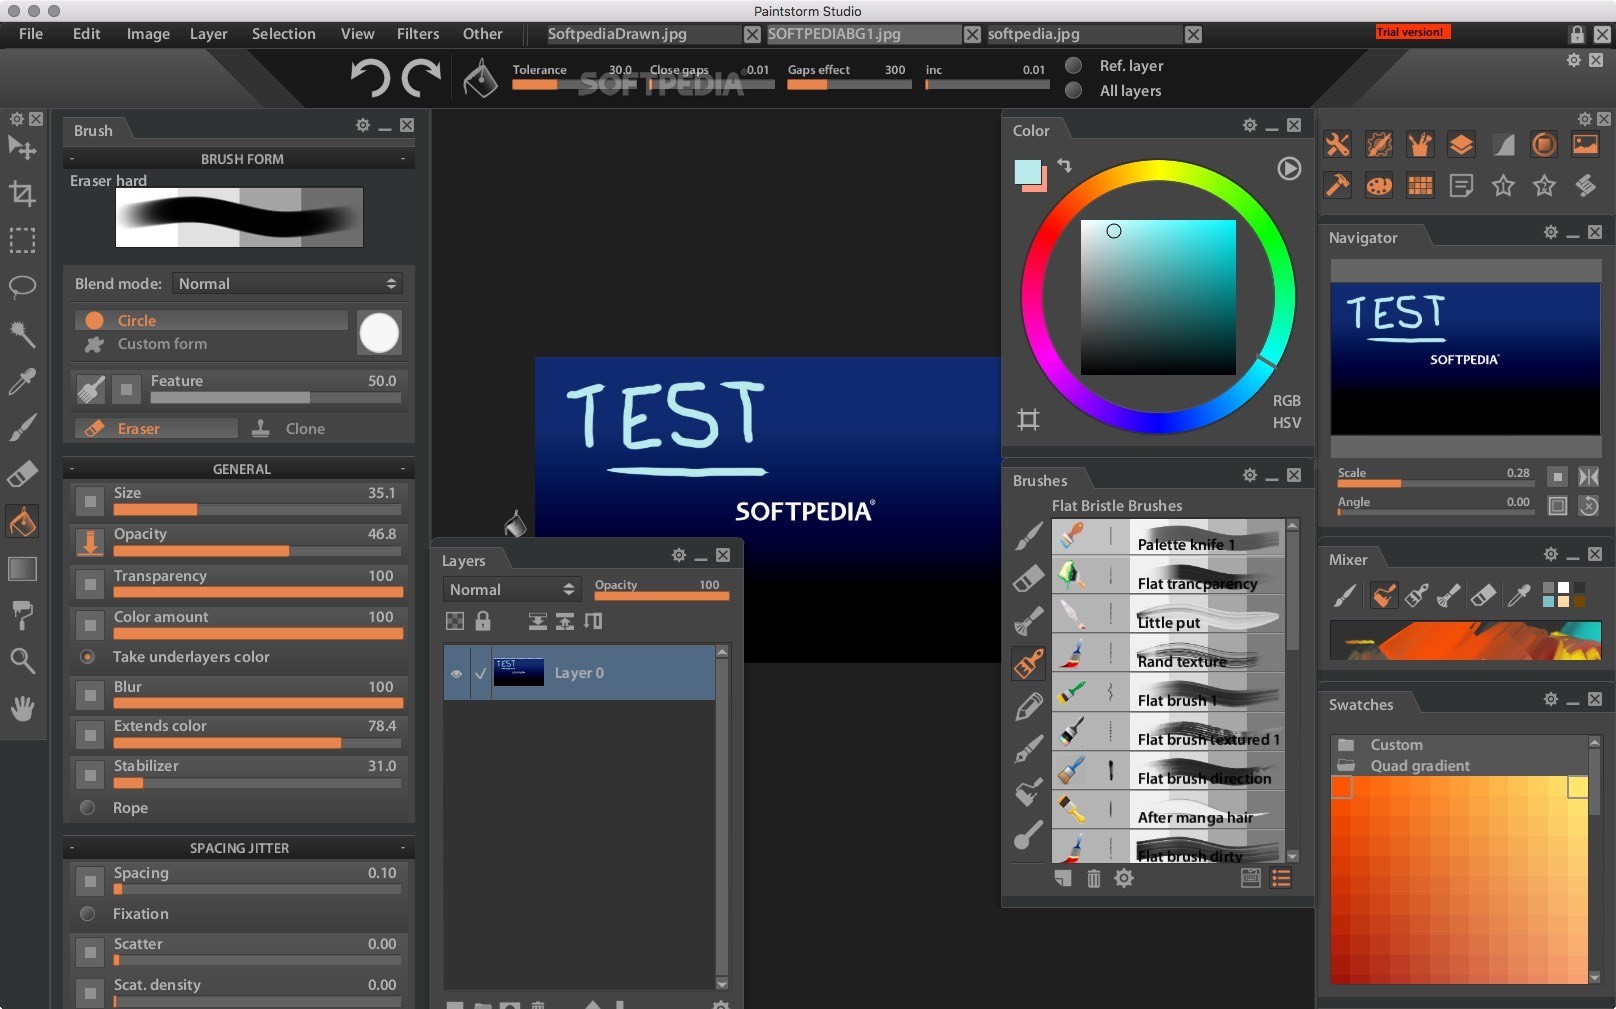 Paintstorm Studio 2.4 For Mac Free Download